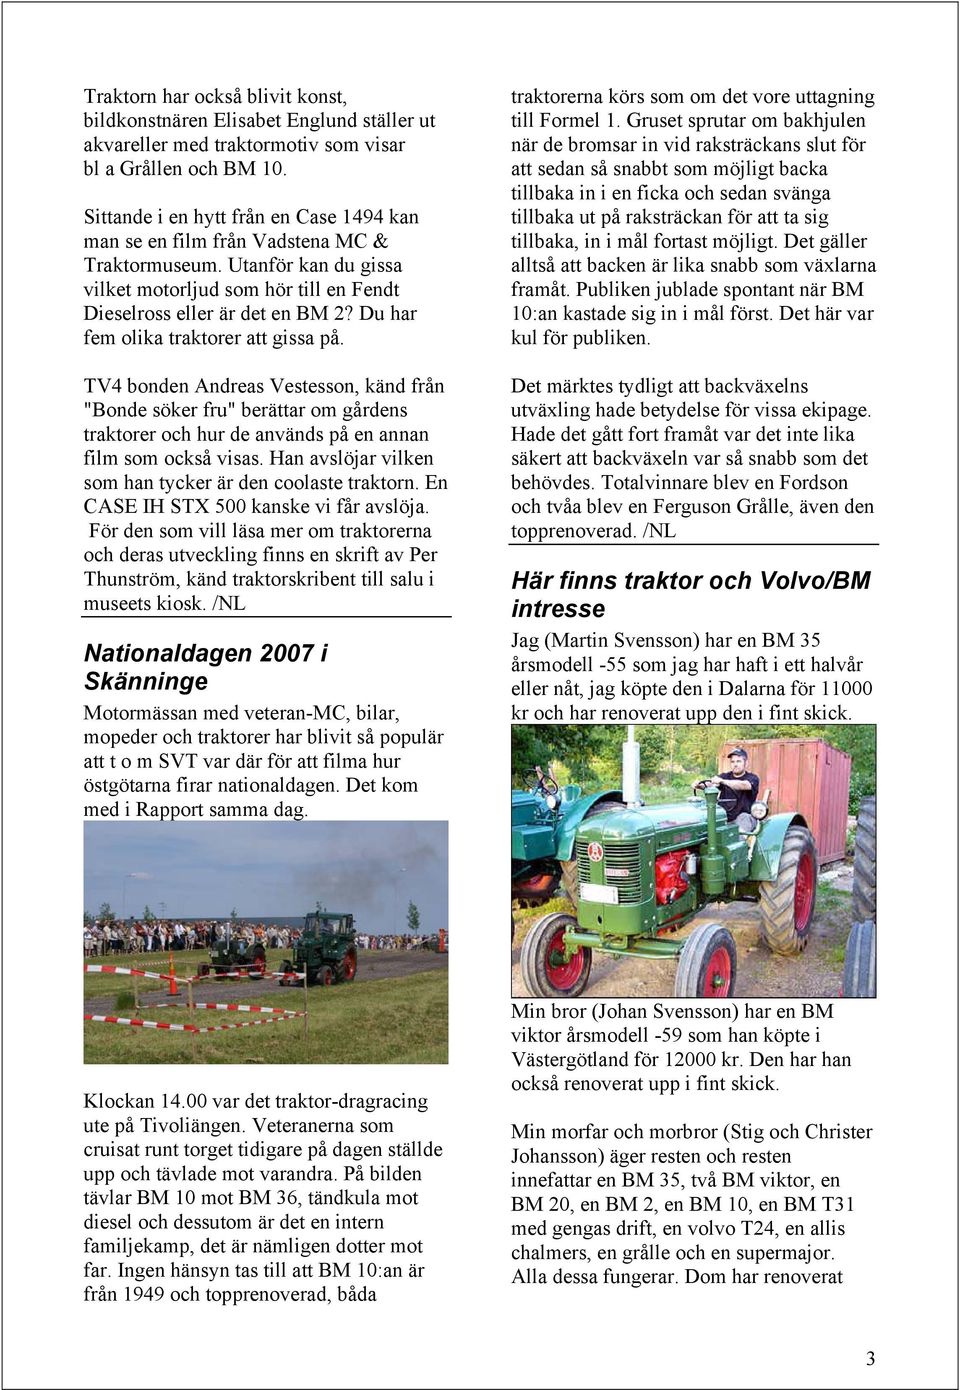 Du har fem olika traktorer att gissa på. TV4 bonden Andreas Vestesson, känd från "Bonde söker fru" berättar om gårdens traktorer och hur de används på en annan film som också visas.